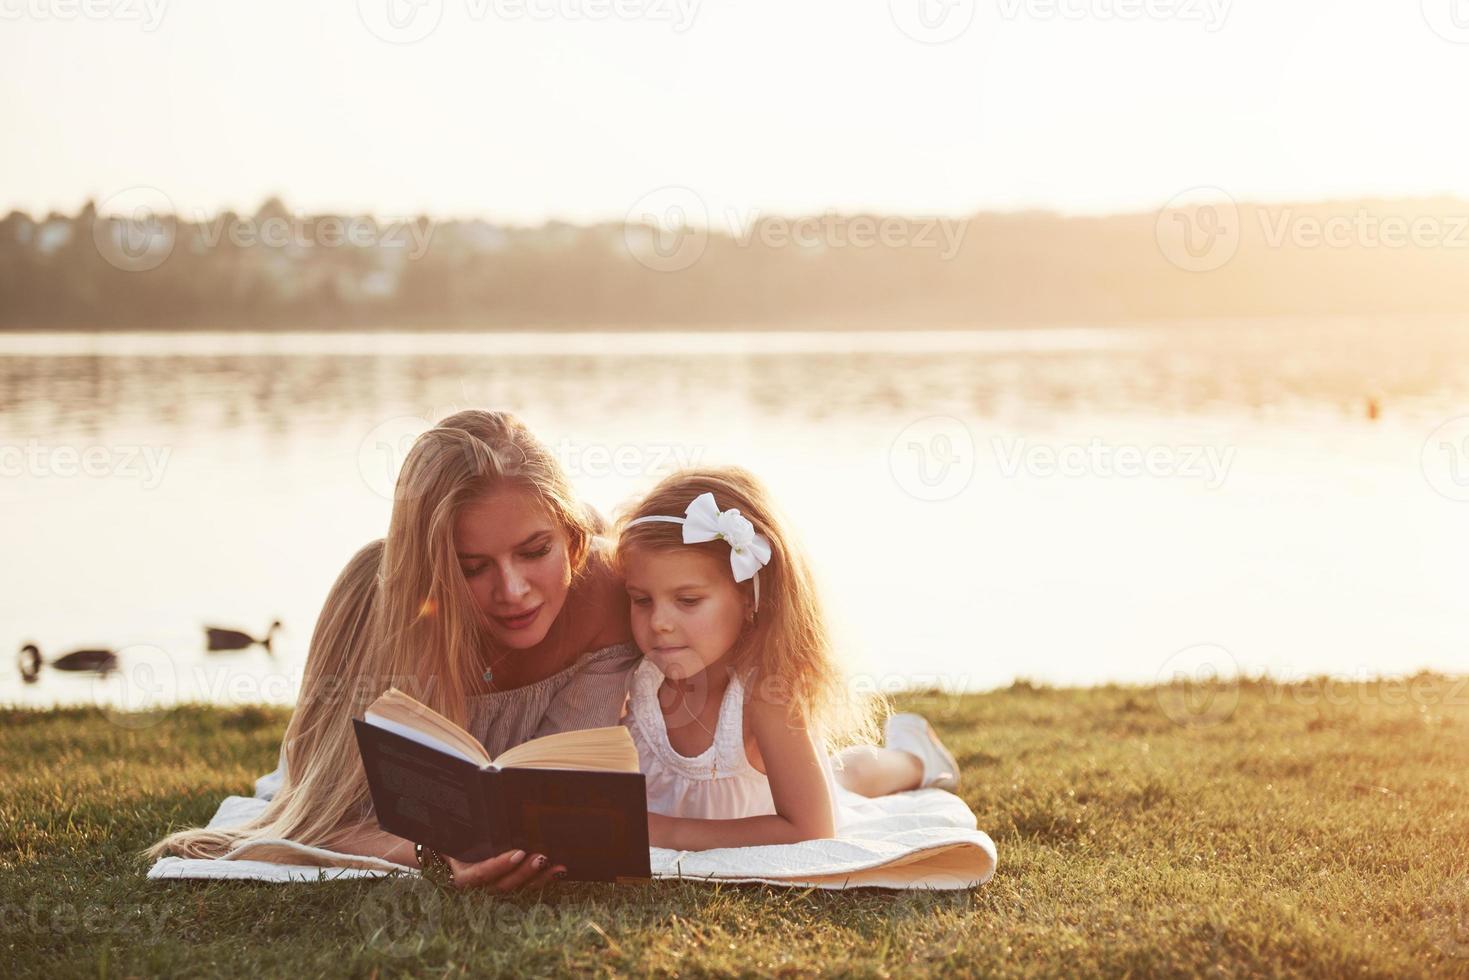 mère avec un enfant lit un livre sur l'herbe photo